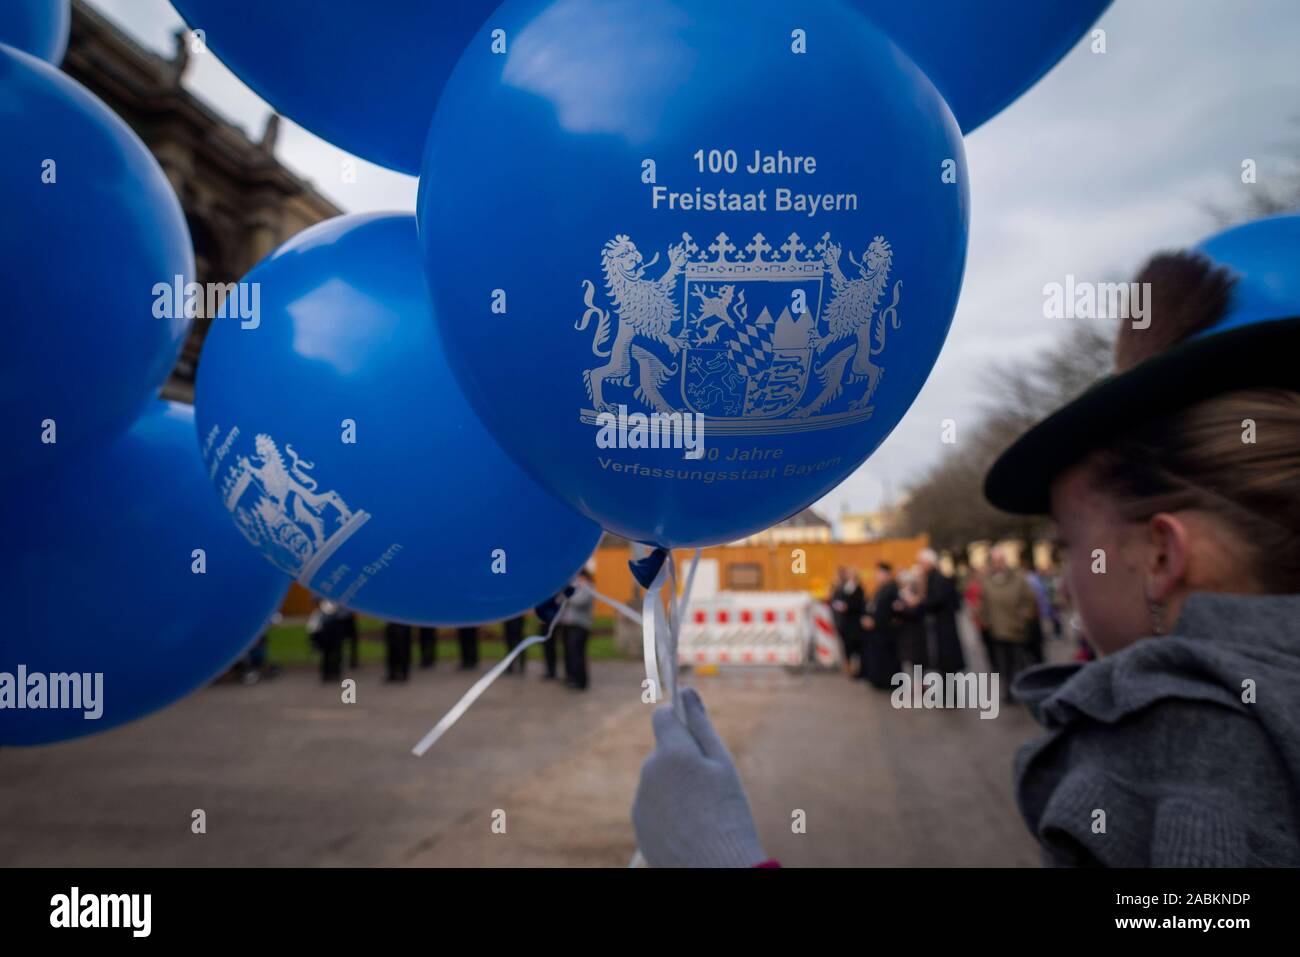 Ein Mädchen aus der Gruppe der Kinder der Goldbergler Helfendorf Trachtenverein hält ein Ballon am Hofgarten in München anlässlich des 100-jährigen Jubiläums des Freistaates Bayern. [Automatisierte Übersetzung] Stockfoto